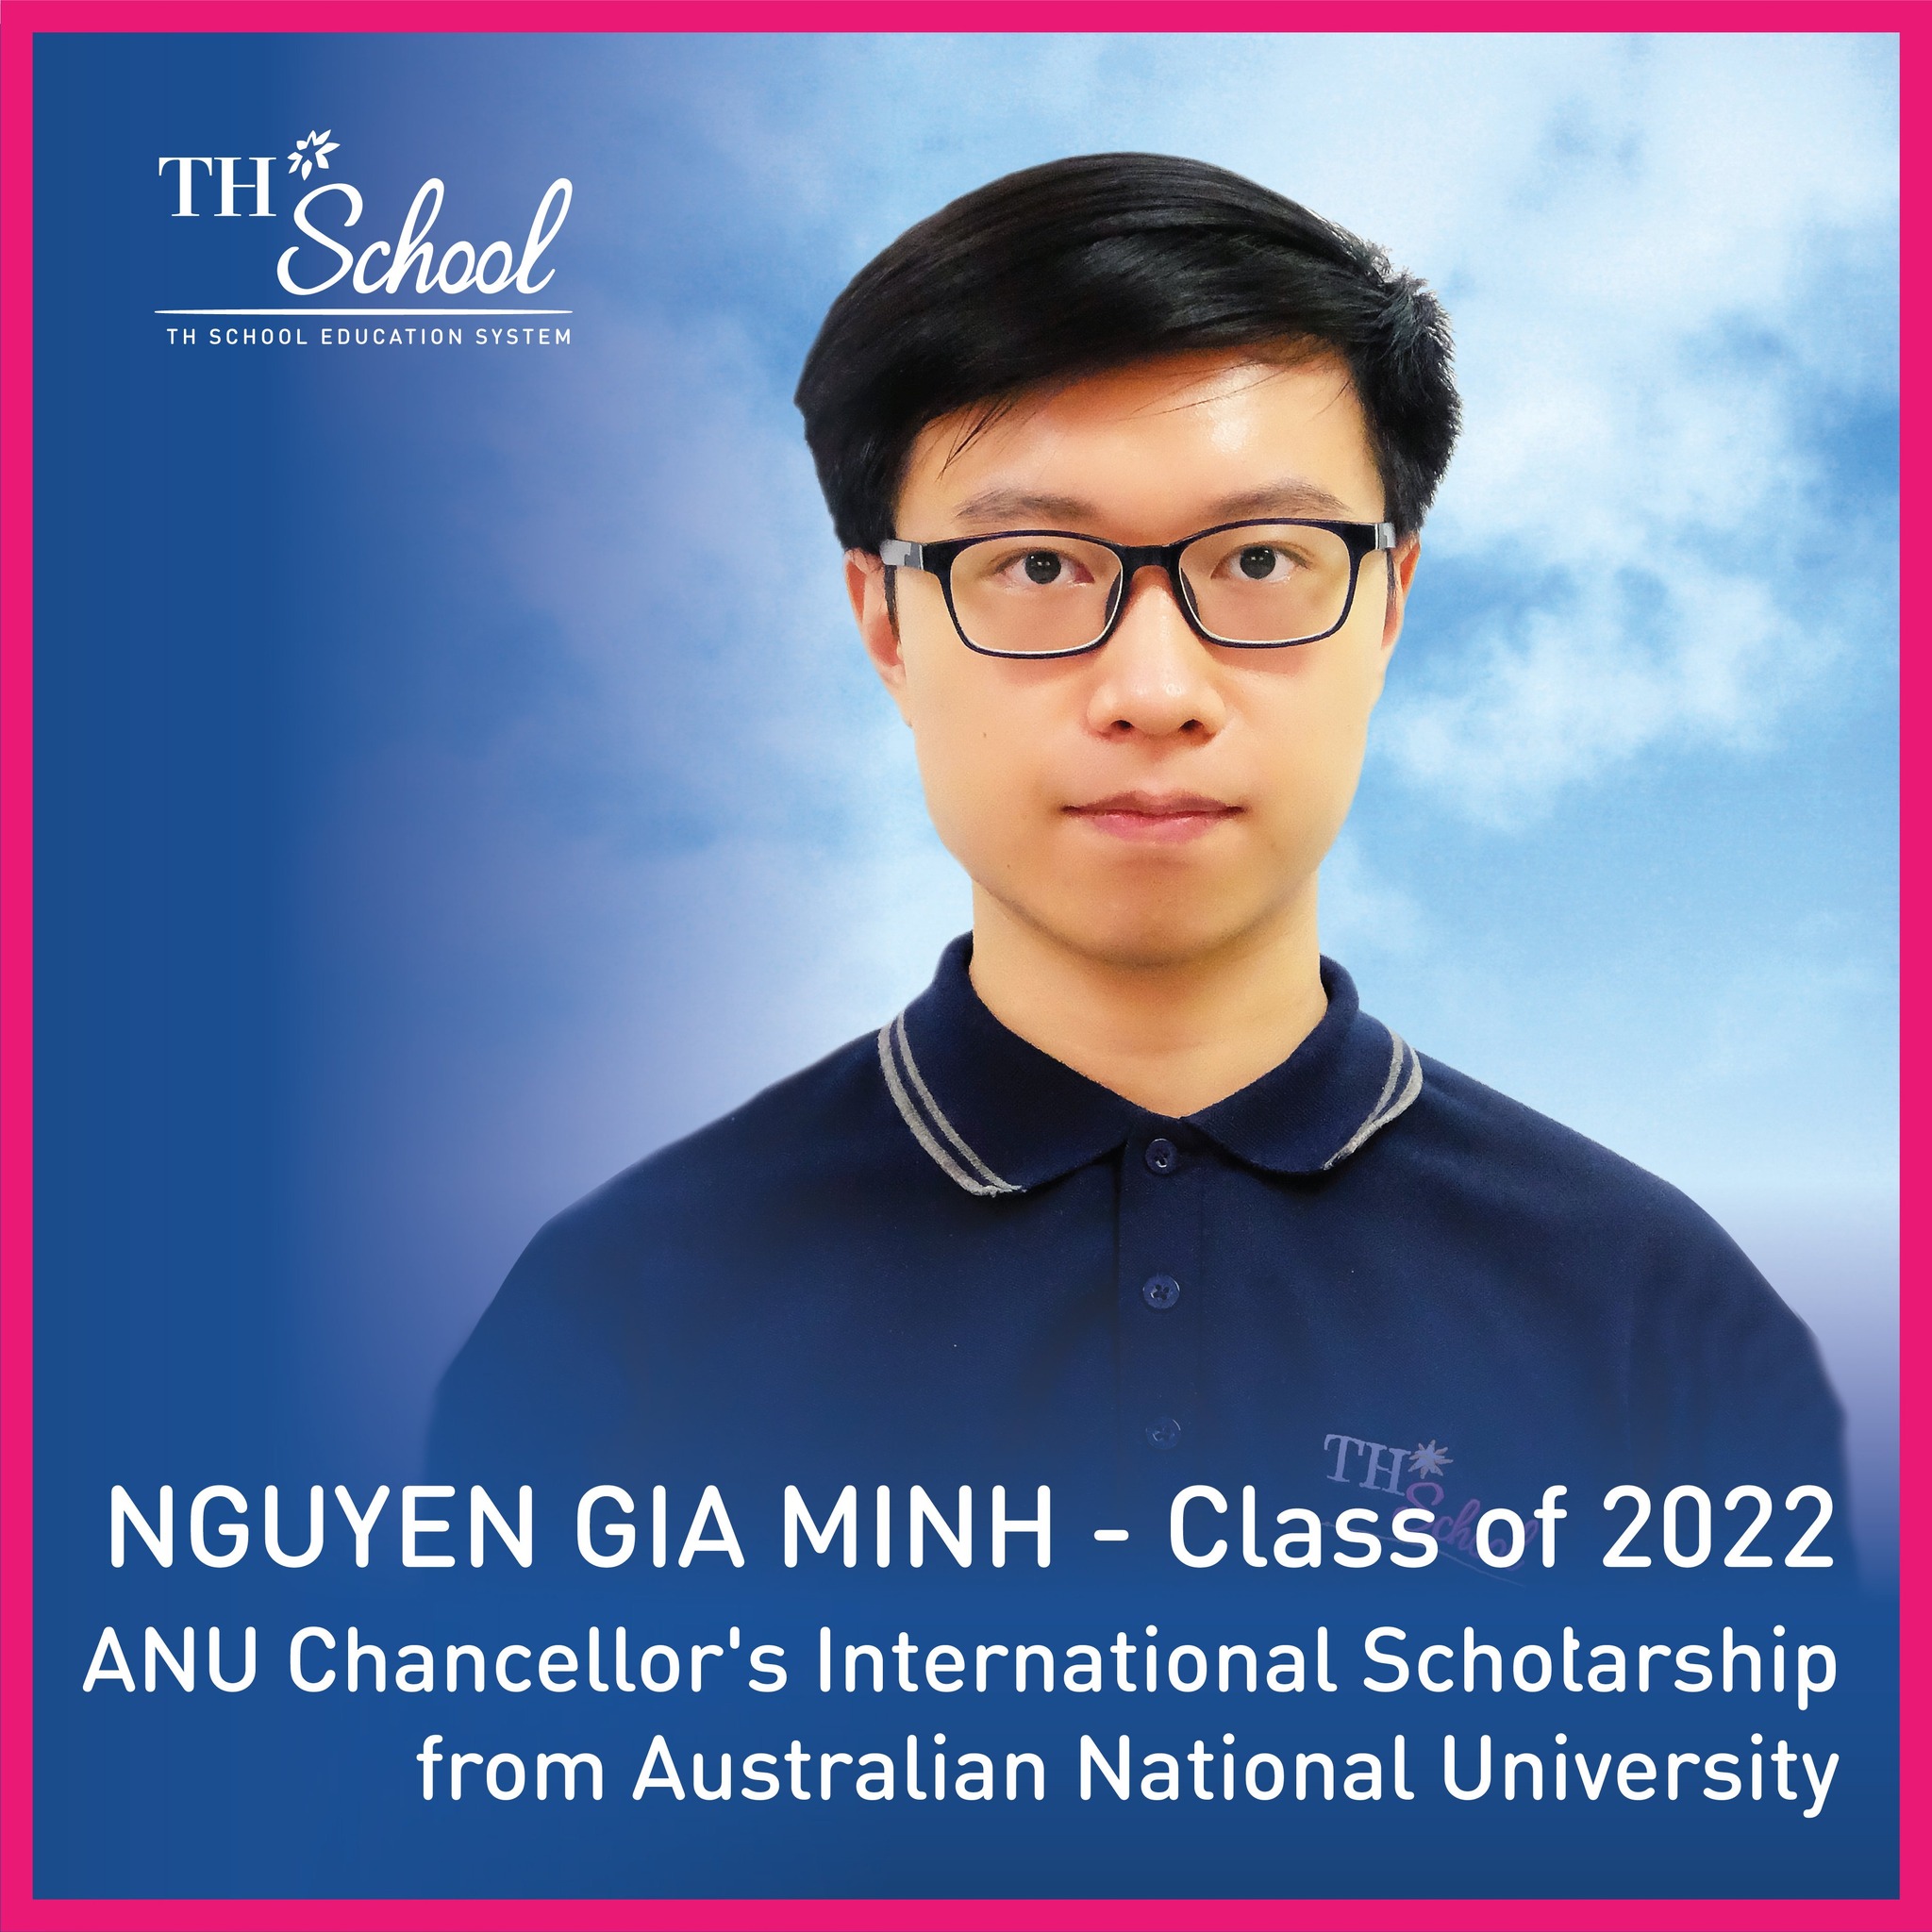 Cựu học sinh TH School lọt top 10 học sinh Việt Nam được nhận Học bổng Quốc tế của Hiệu trưởng trường Đại học Quốc gia Úc